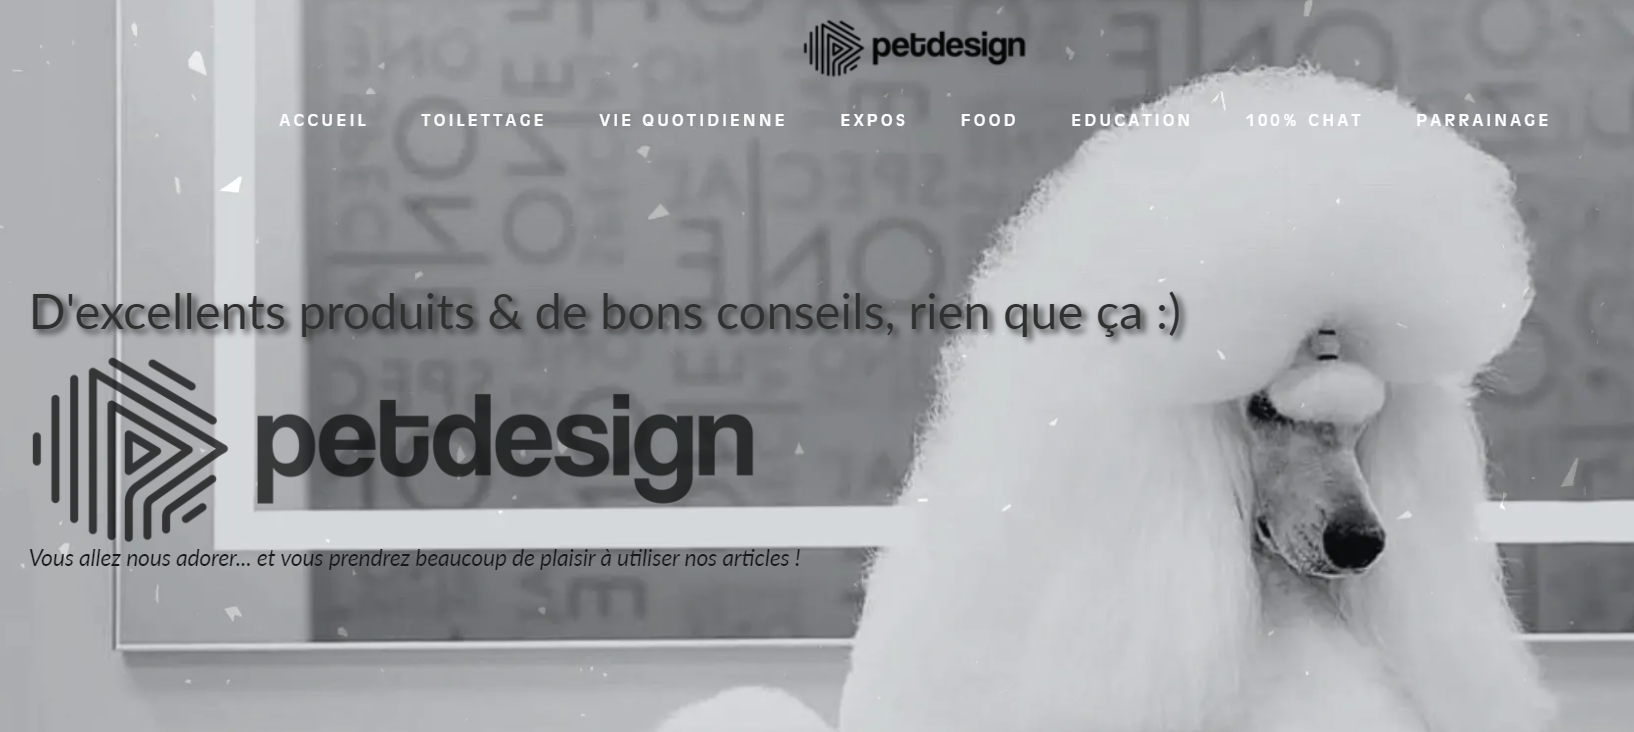 (c) Petdesign.fr